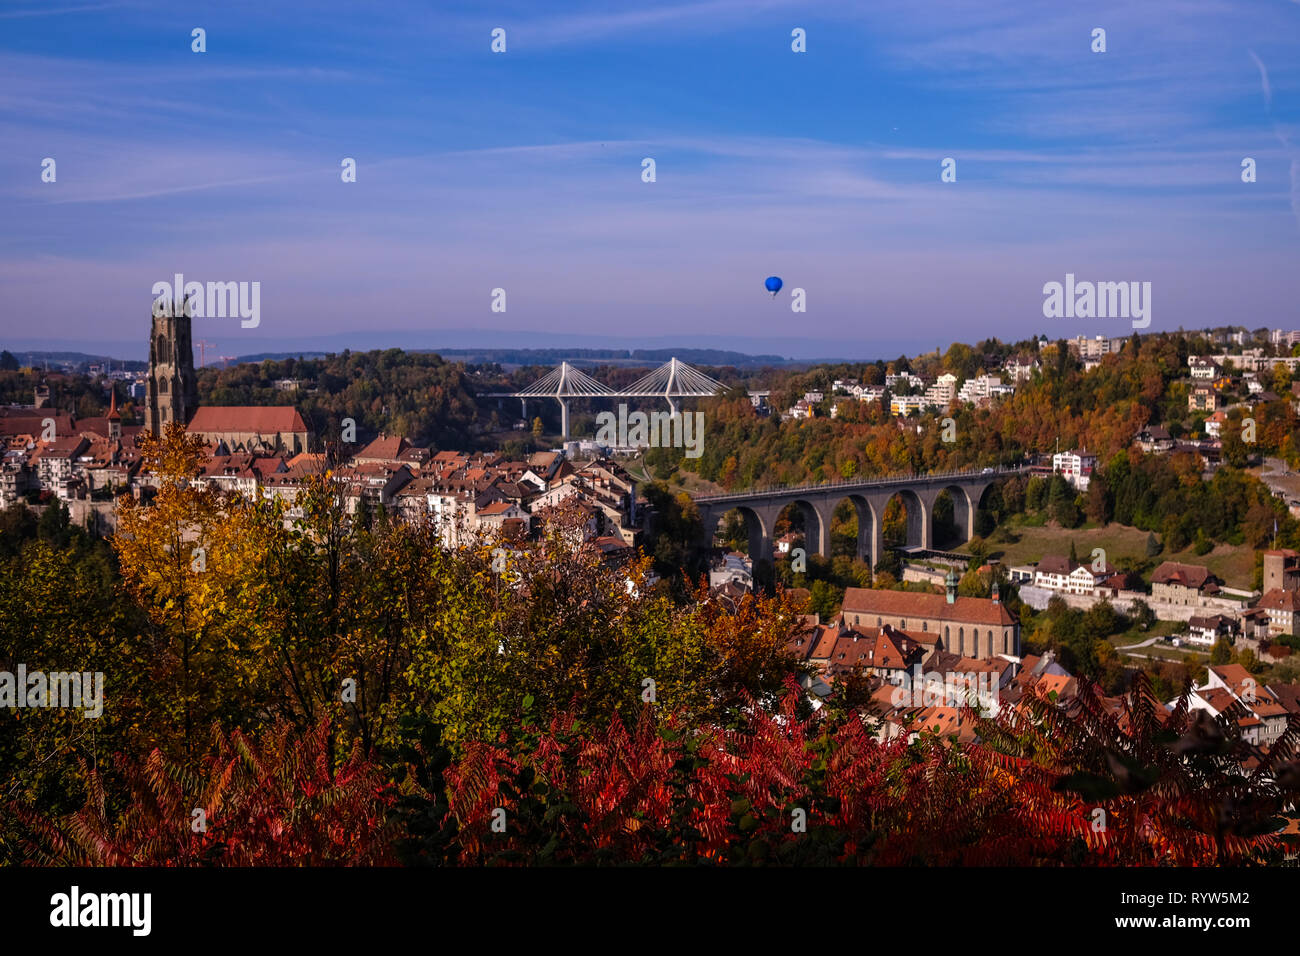 La vista horizontal del casco antiguo de la ciudad de Friburgo y sus alrededores, en Suiza, rodada en el otoño de 2018 Foto de stock